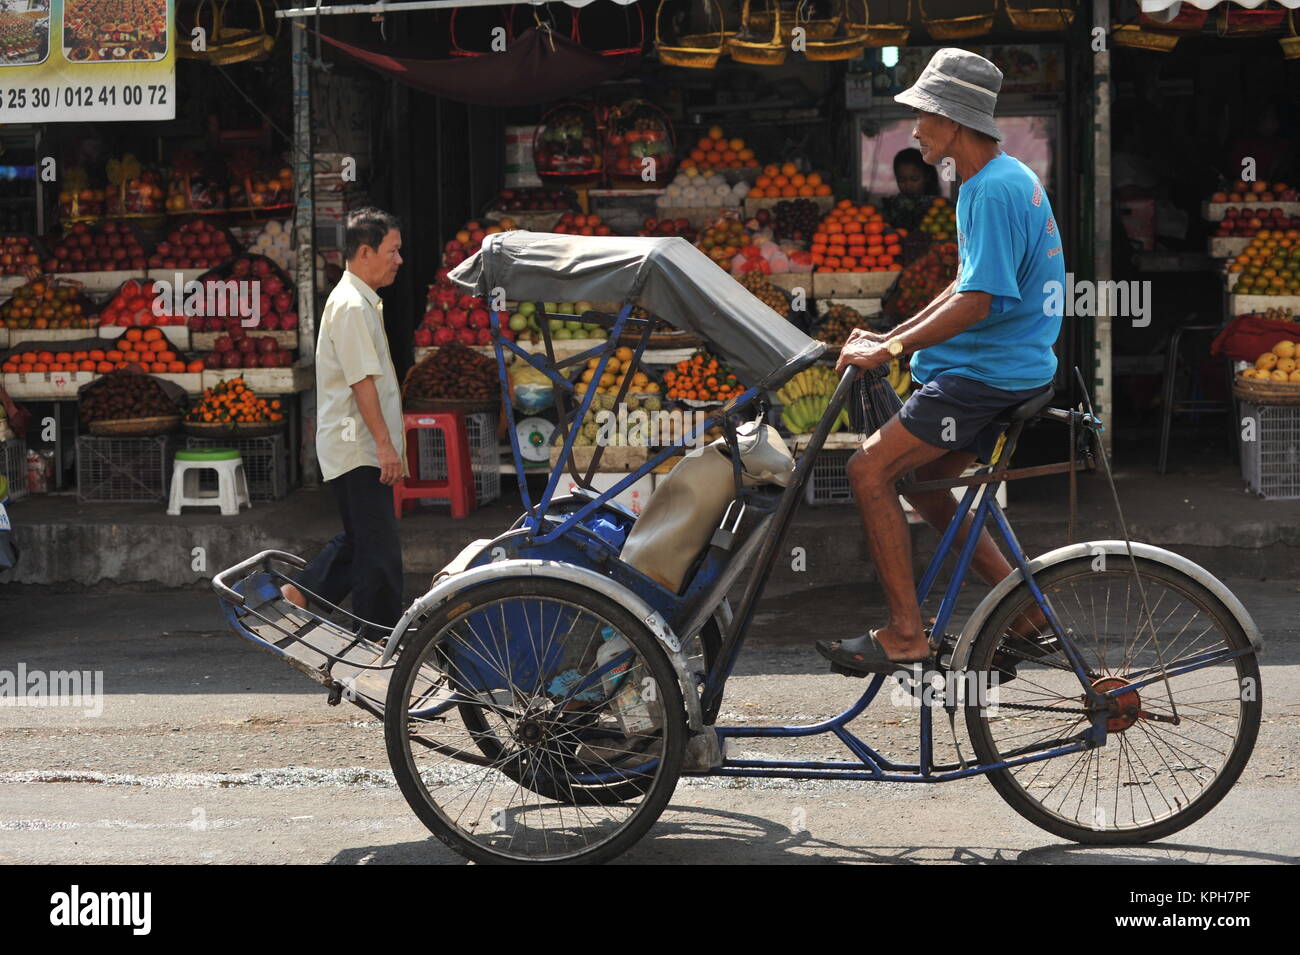 Ein cyclo oder Velo-rikscha Fahrten Vergangenheit 'Alter Markt', Open air Obst steht im Hintergrund, Phnom Penh, Kambodscha. Credit: Kraig Lieb Stockfoto